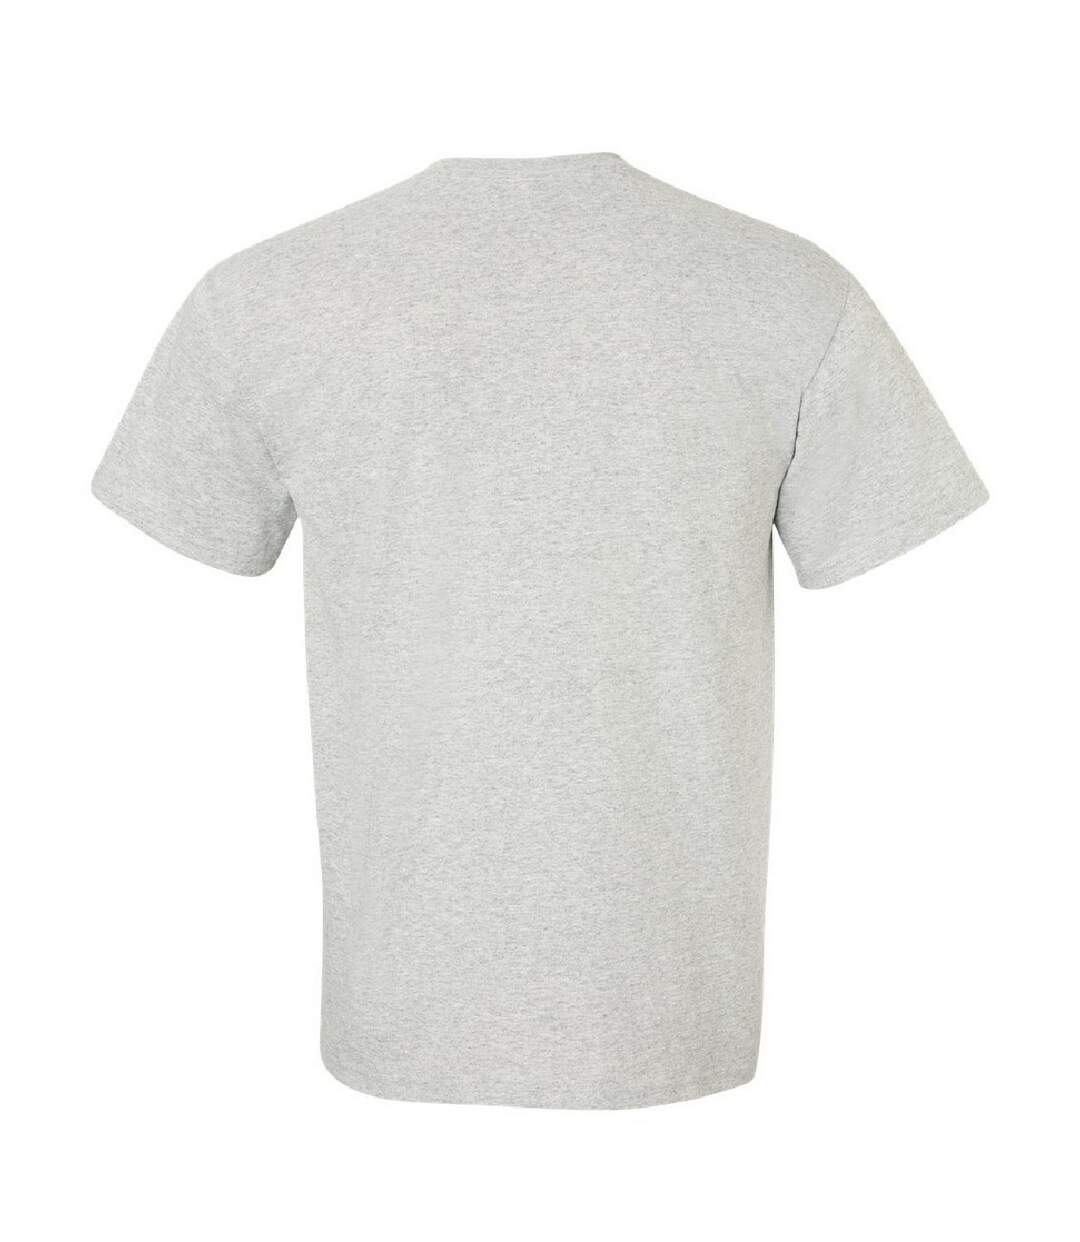 Gildan - T-shirt à manches courtes - Homme (Gris cendre) - UTBC475